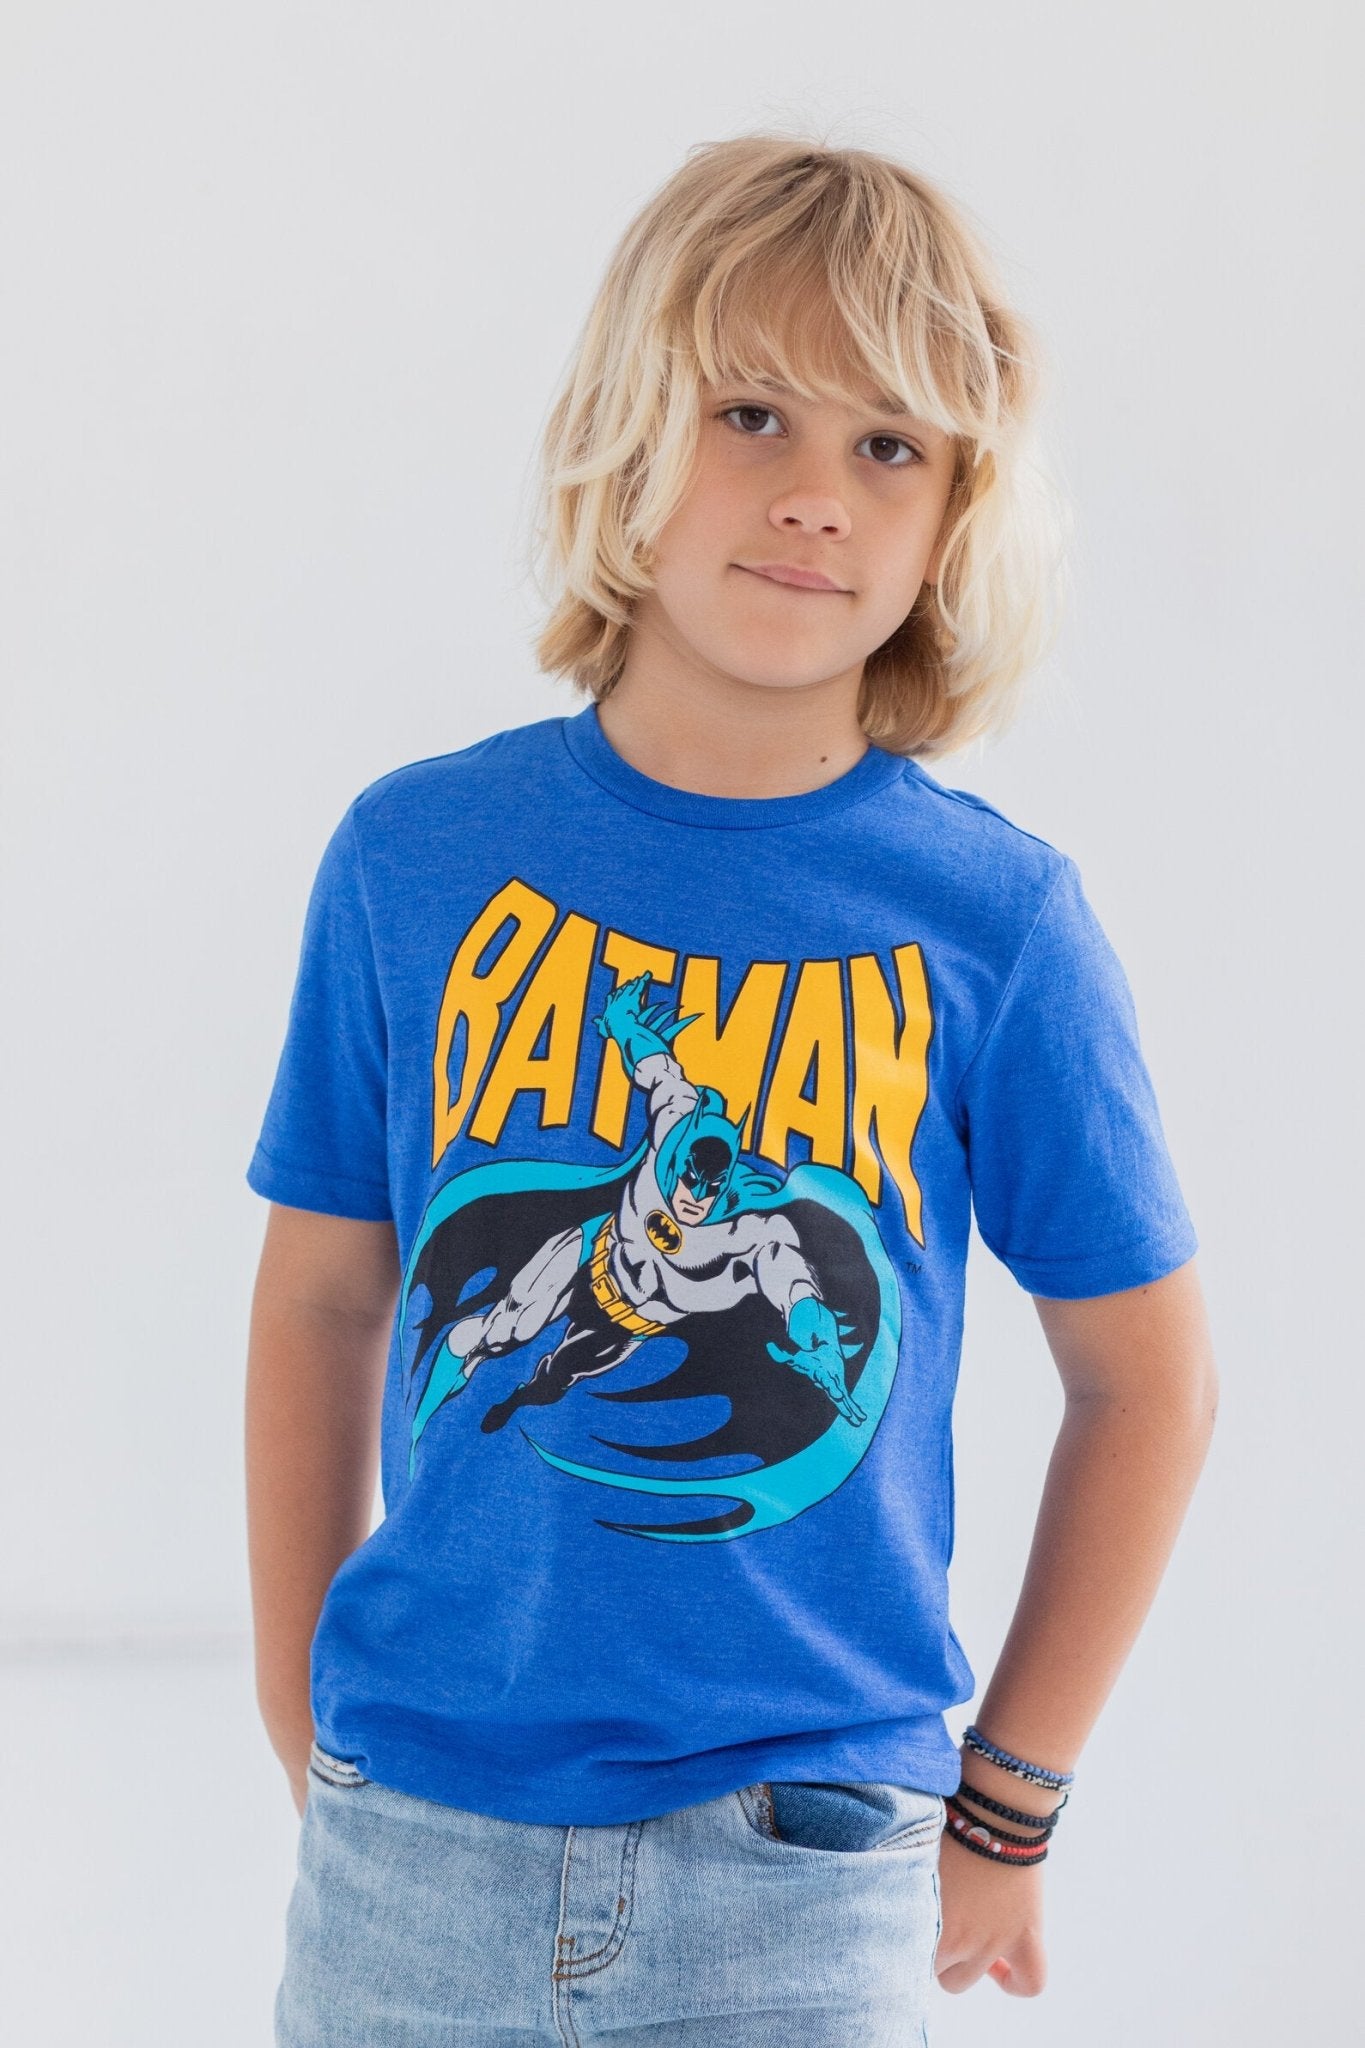 DC Comics Batman 4 Pack Graphic T-Shirts - imagikids